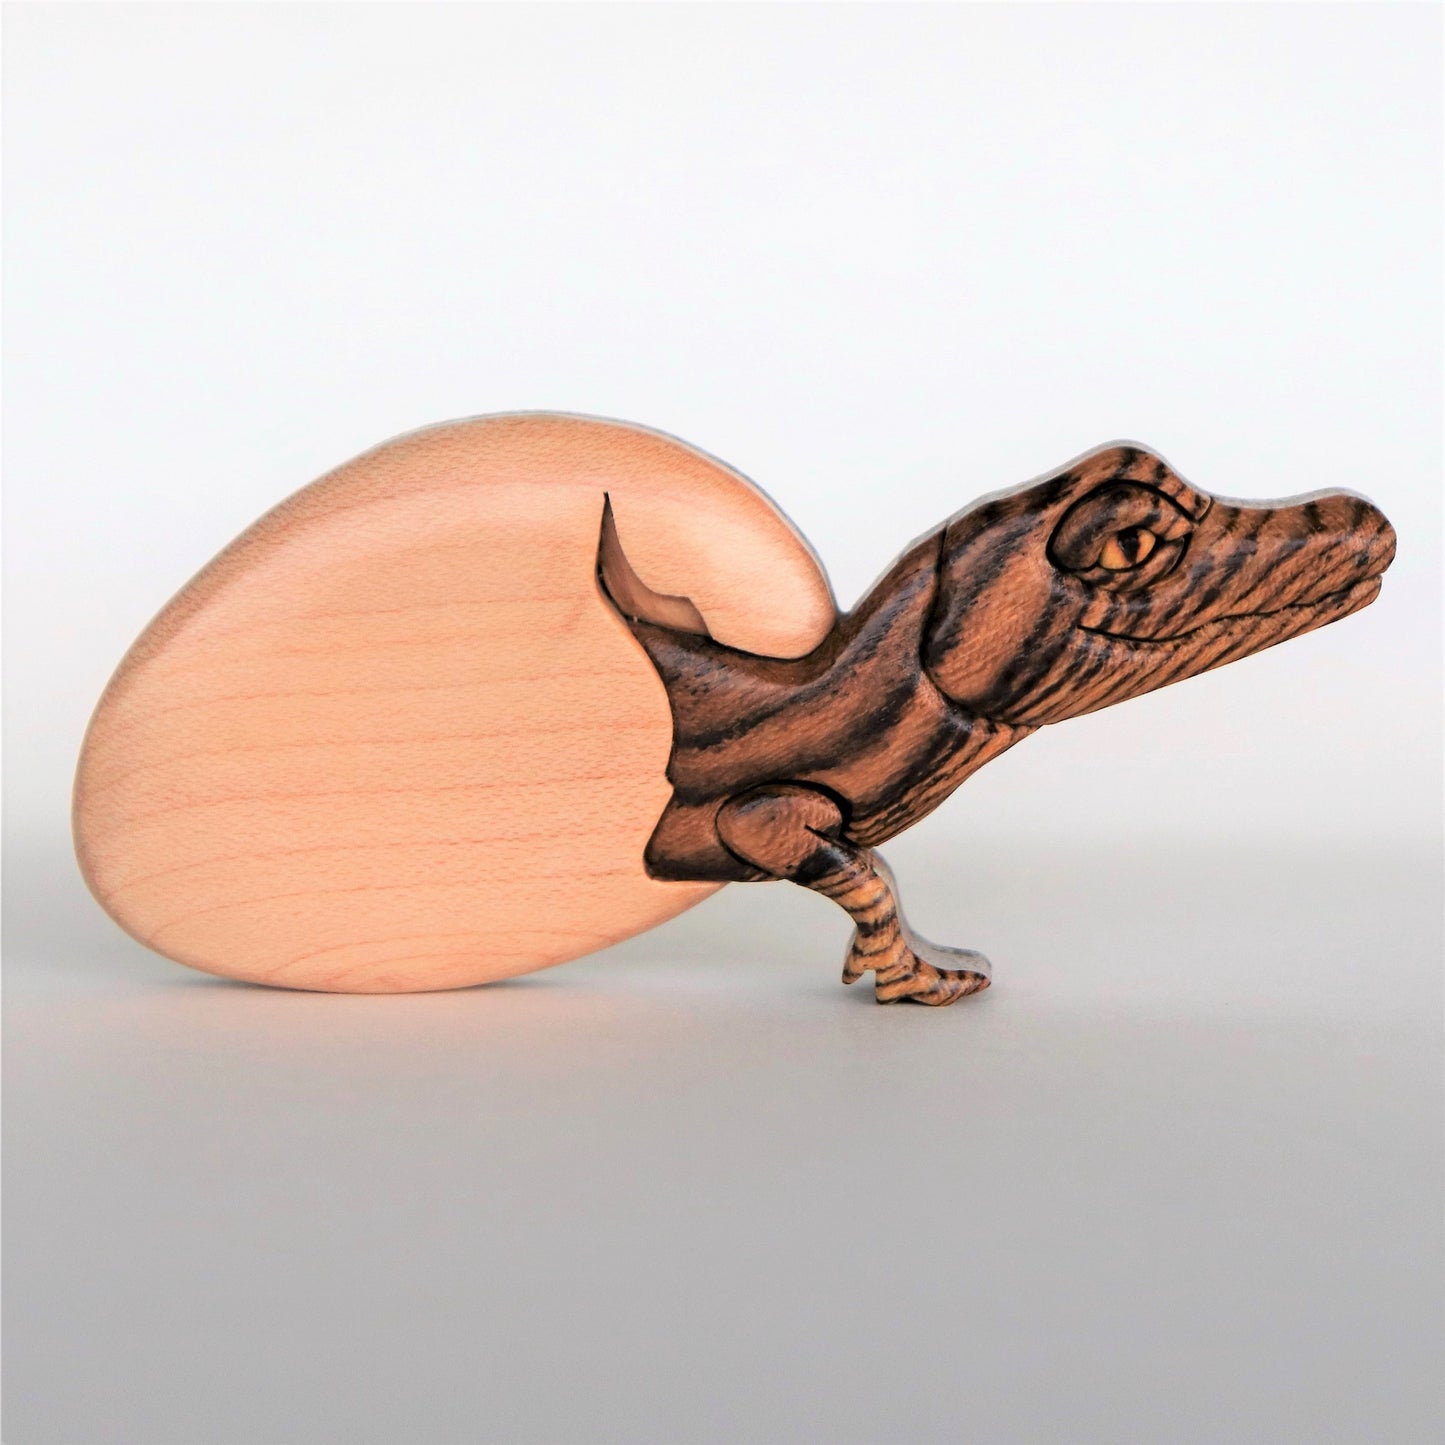 Alligator Hatchling Magnet / Ornament